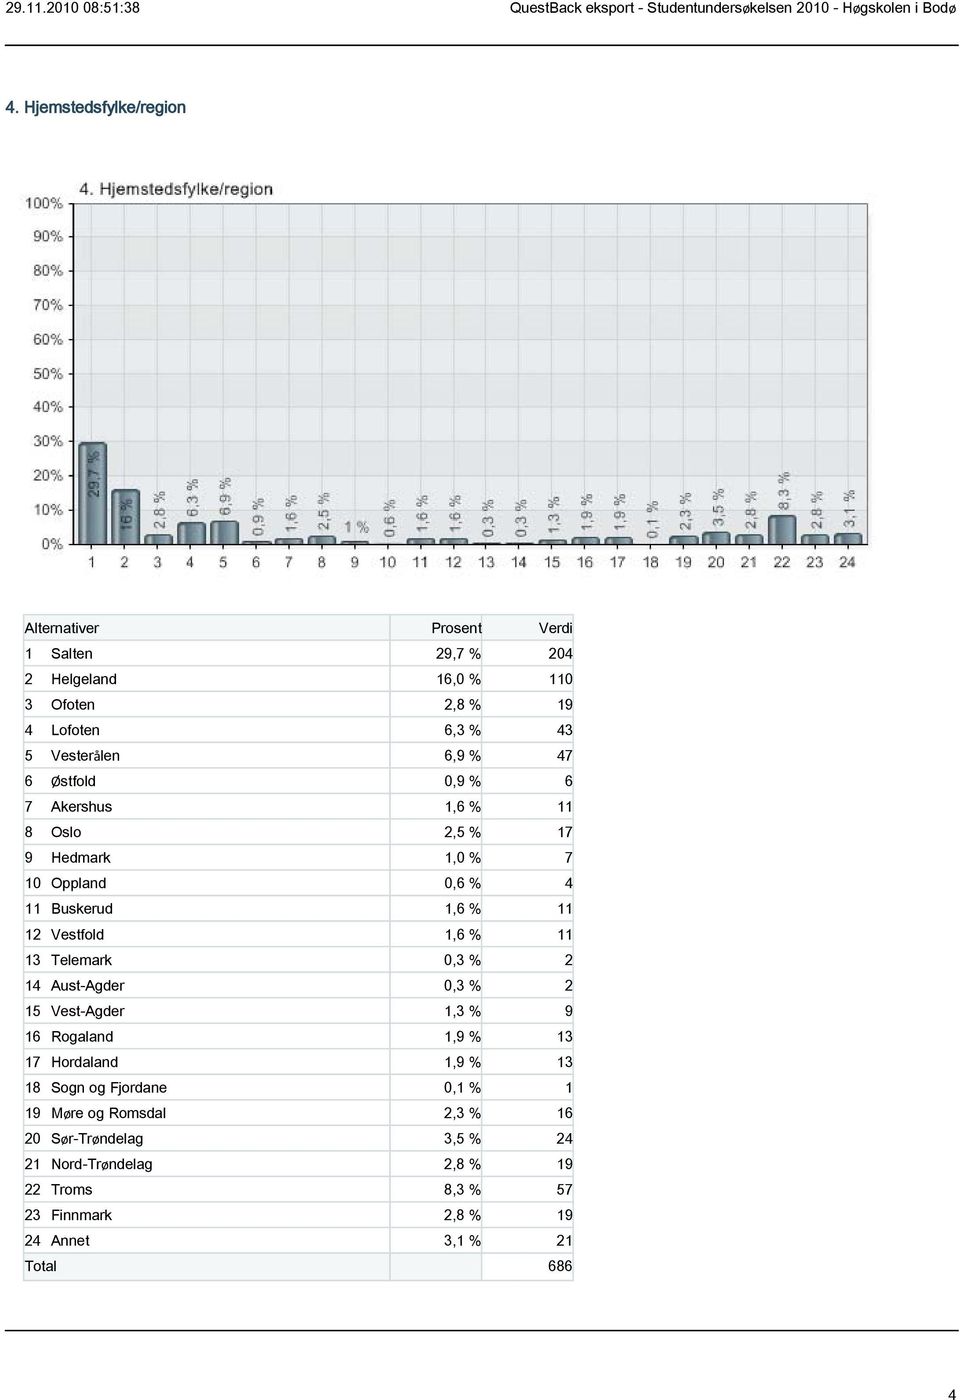 Telemark 0,3 % 2 14 Aust-Agder 0,3 % 2 15 Vest-Agder 1,3 % 9 16 Rogaland 1,9 % 13 17 Hordaland 1,9 % 13 18 Sogn og Fjordane 0,1 % 1 19